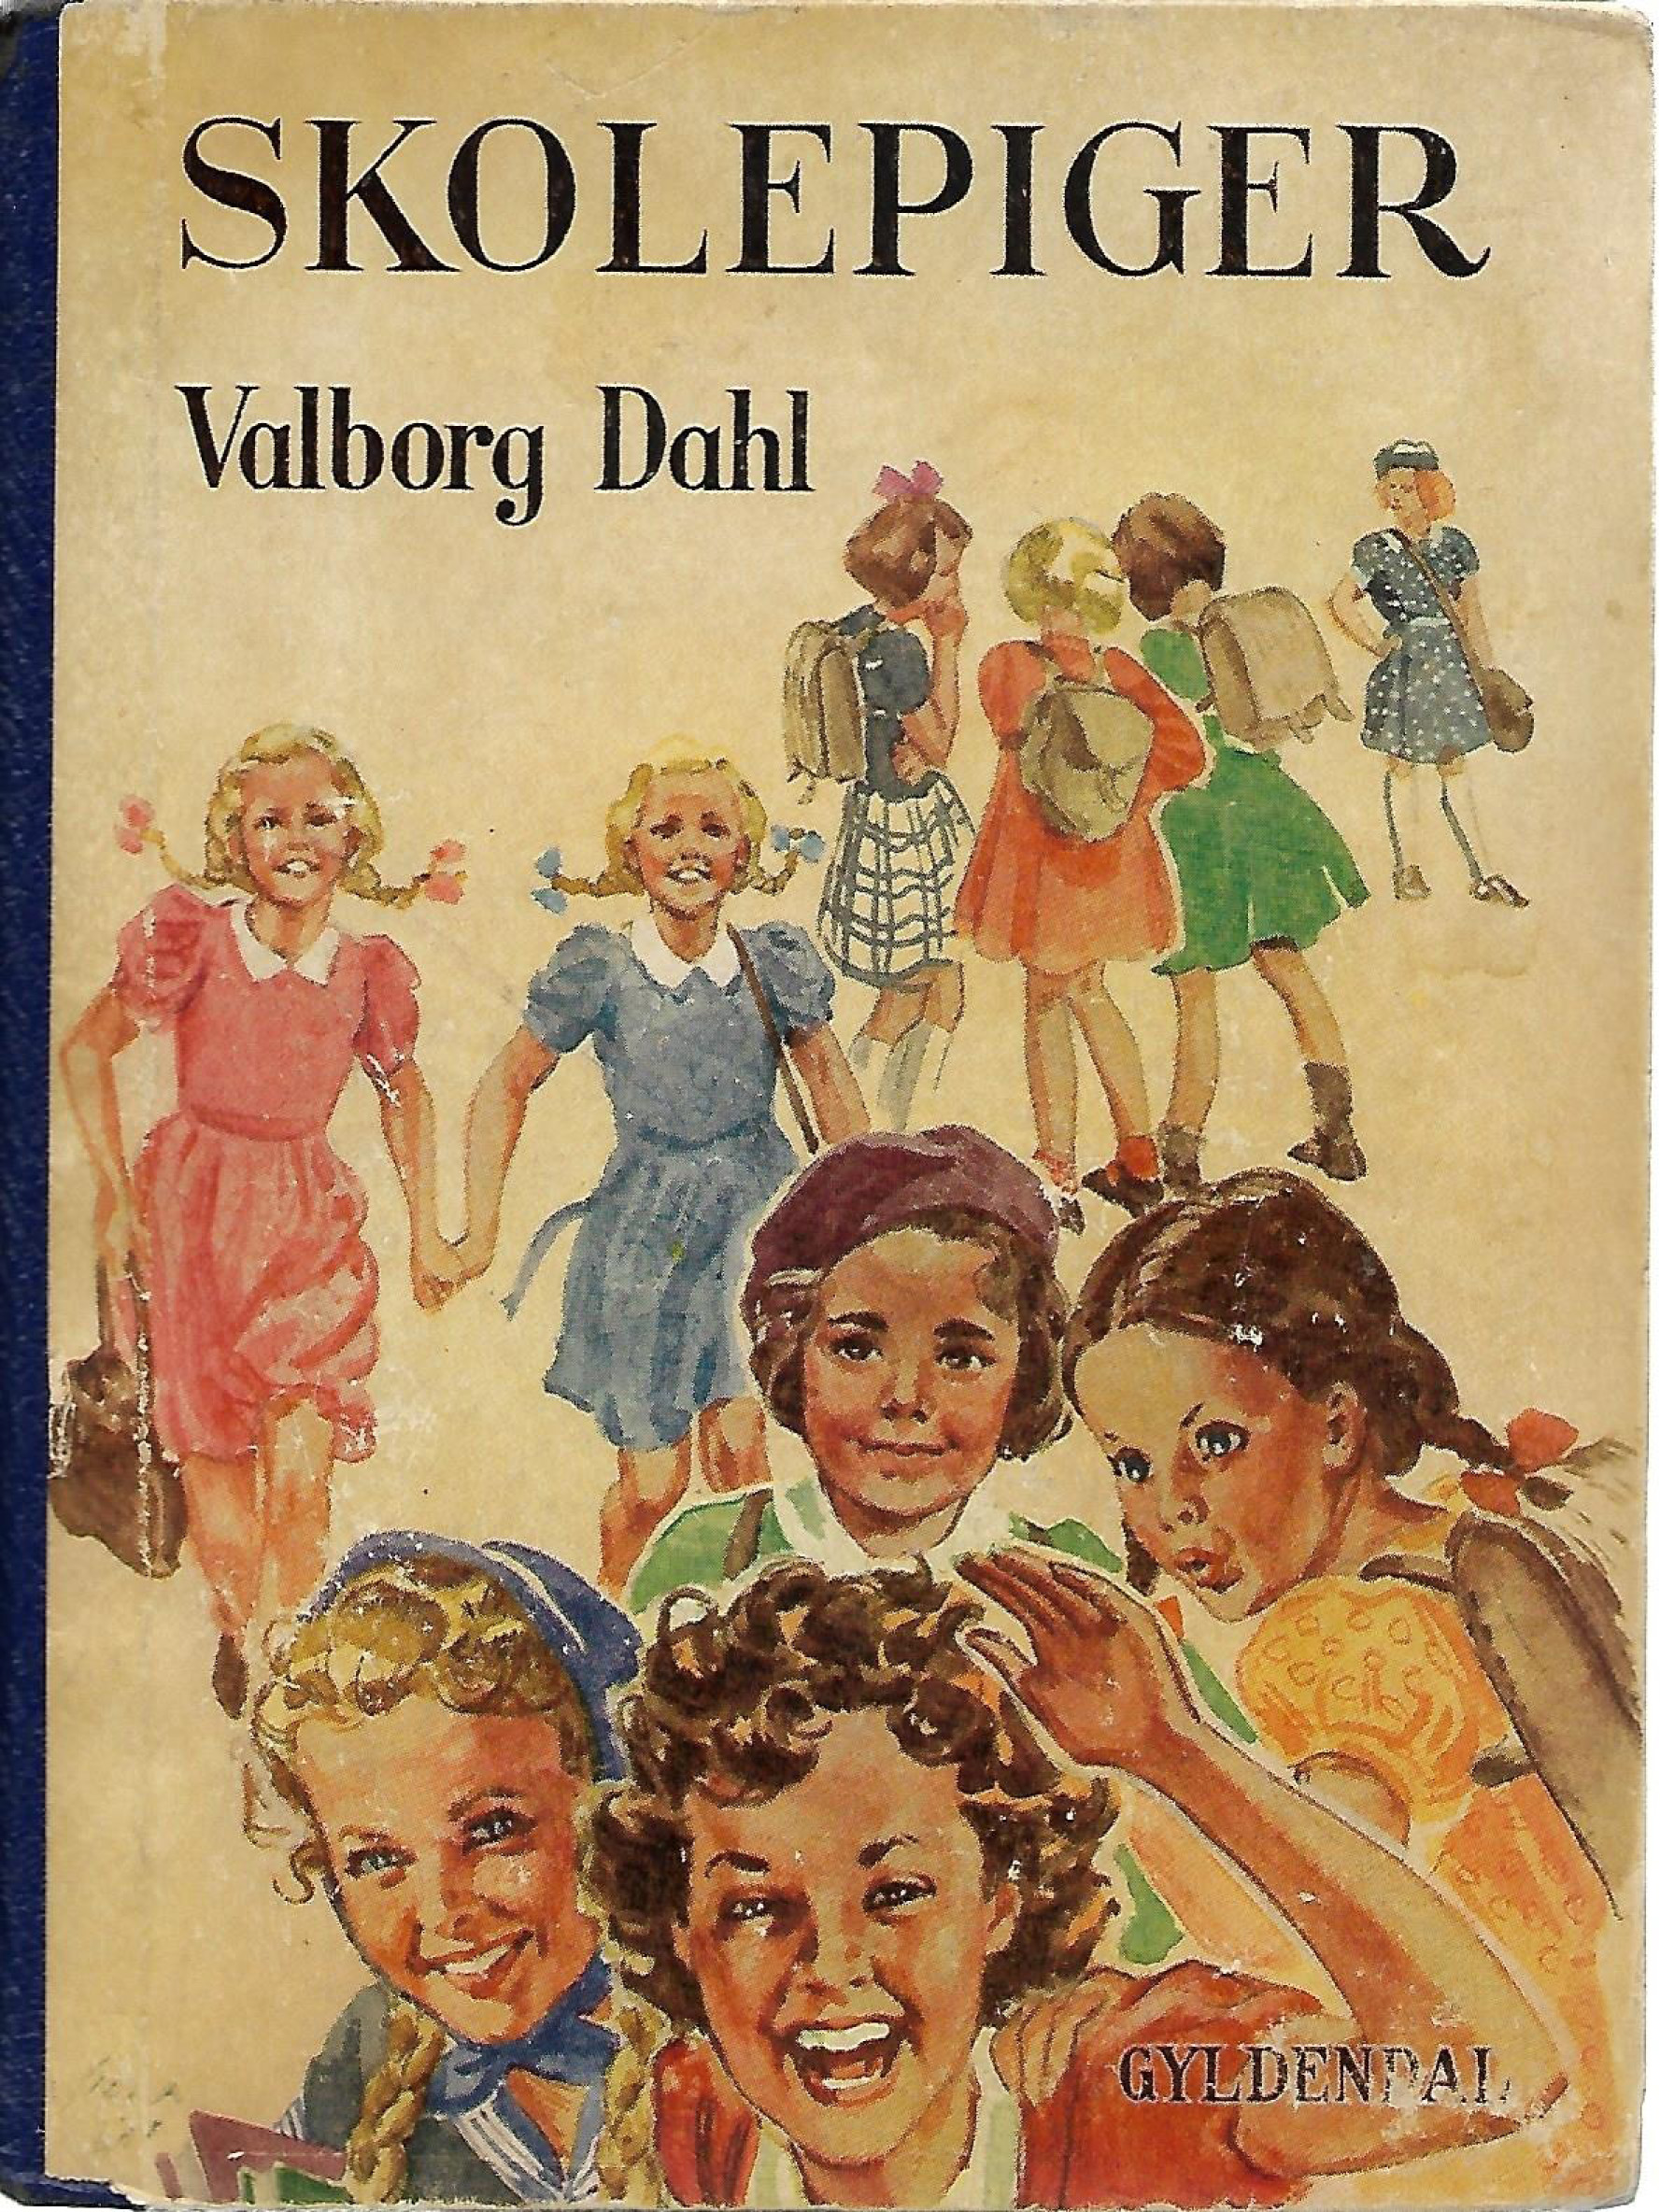 Skolepiger - Valborg Dahl 1945-1